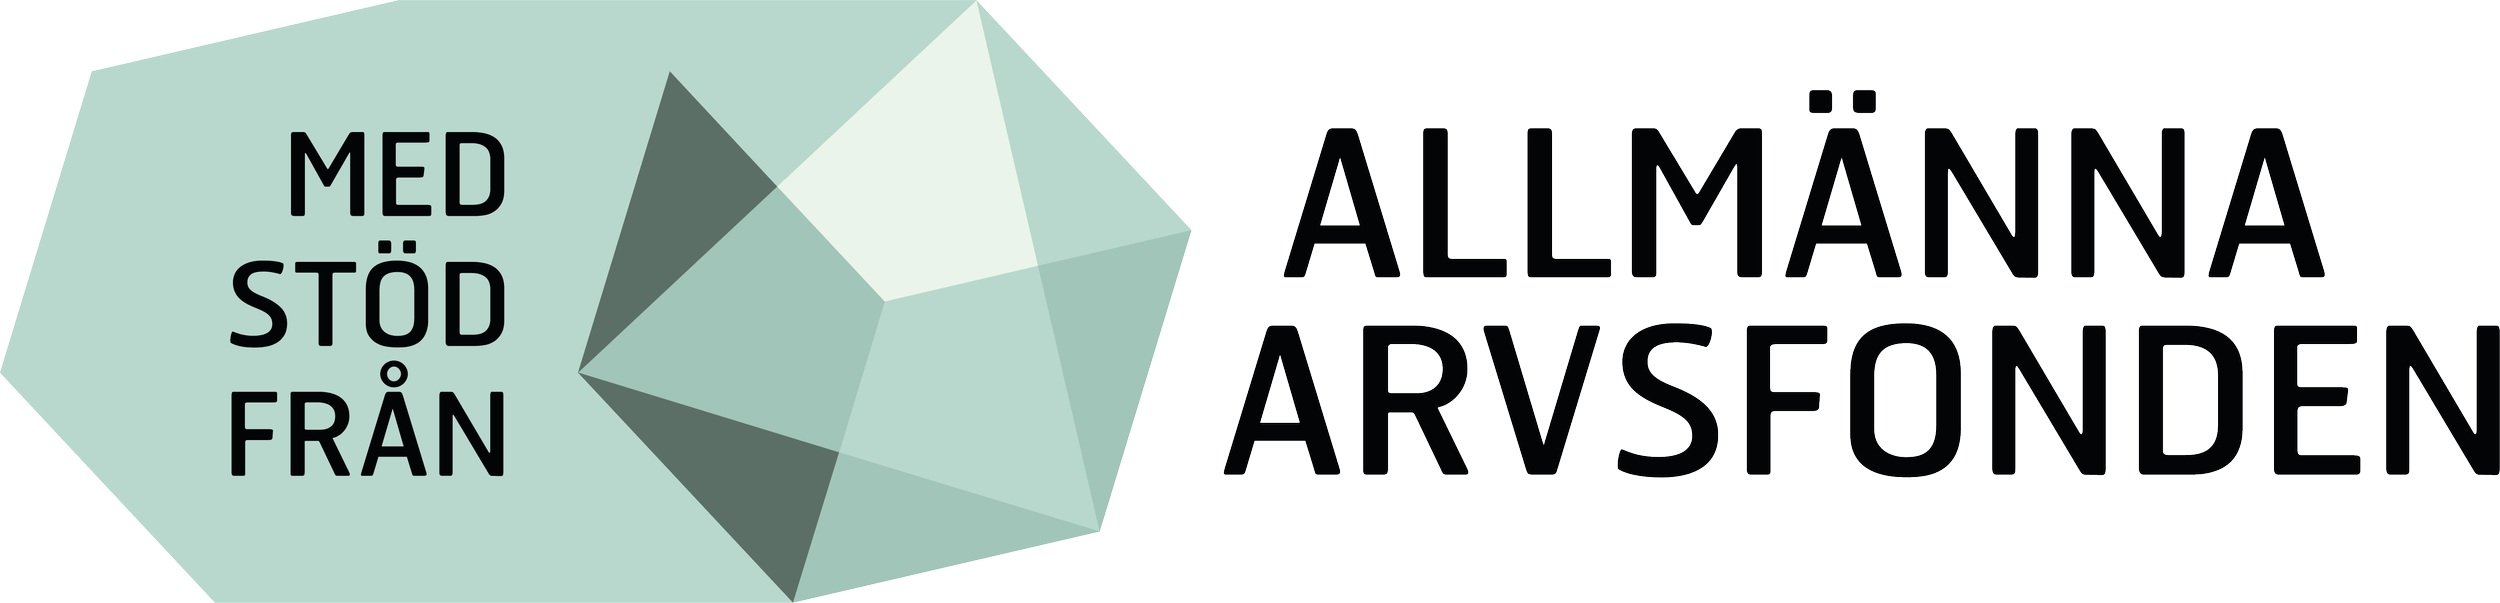 Logotyp för Allmänna Arvsfonden bestående av en ljusblå symbol med inslag av trianglar i olika blåa nyanser och texten “Med stöd från Allmänna Arvsfonden”.